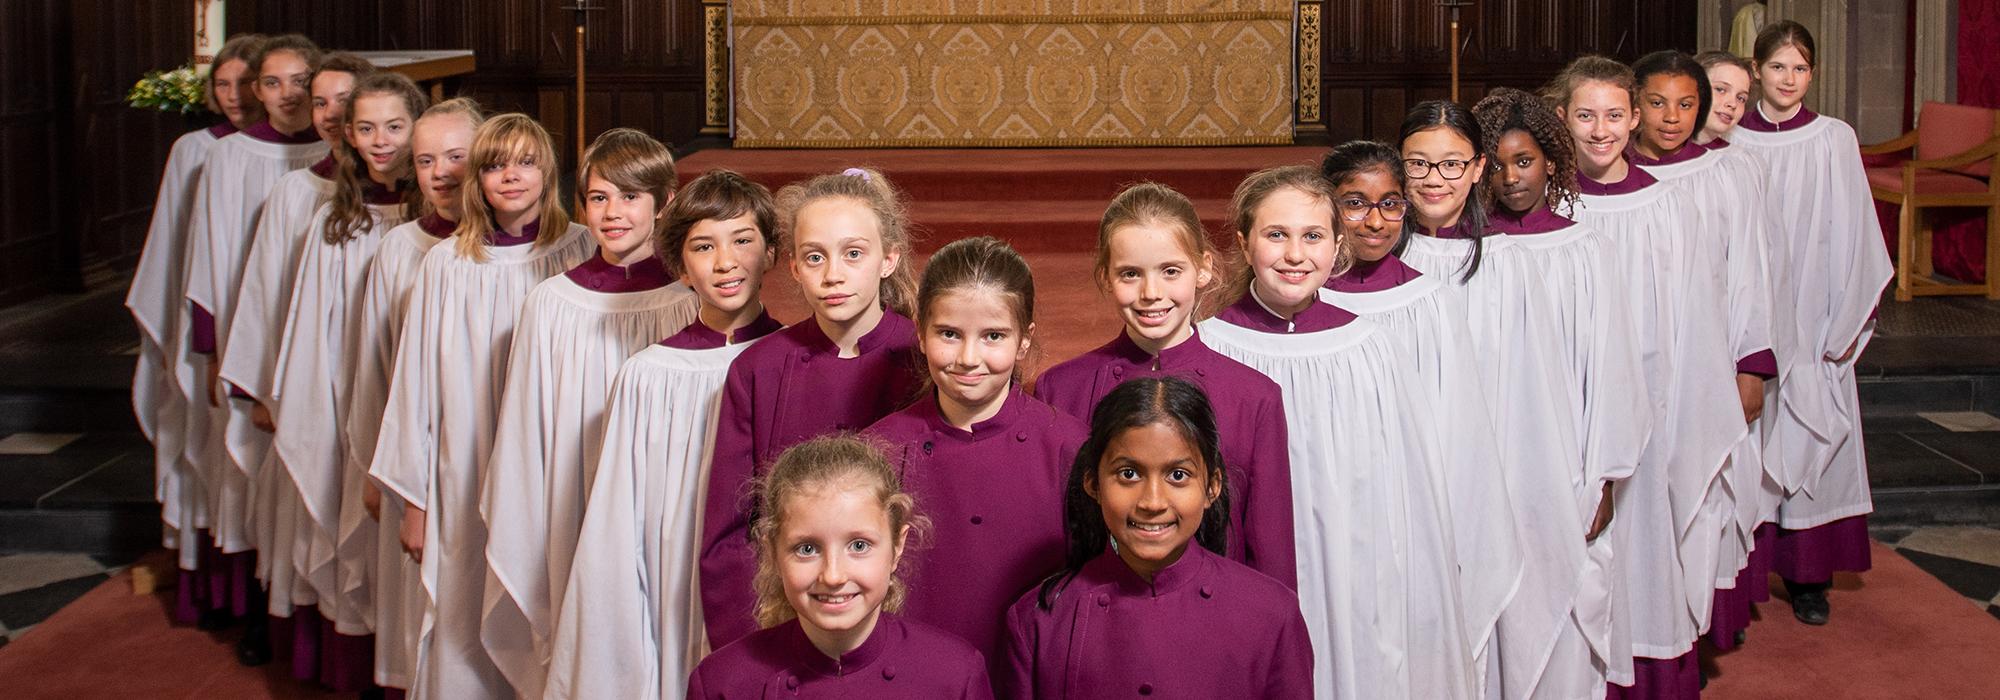 Merton College Girl Choristers in 2019 - Photo: © John Cairns - www.johncairns.co.uk